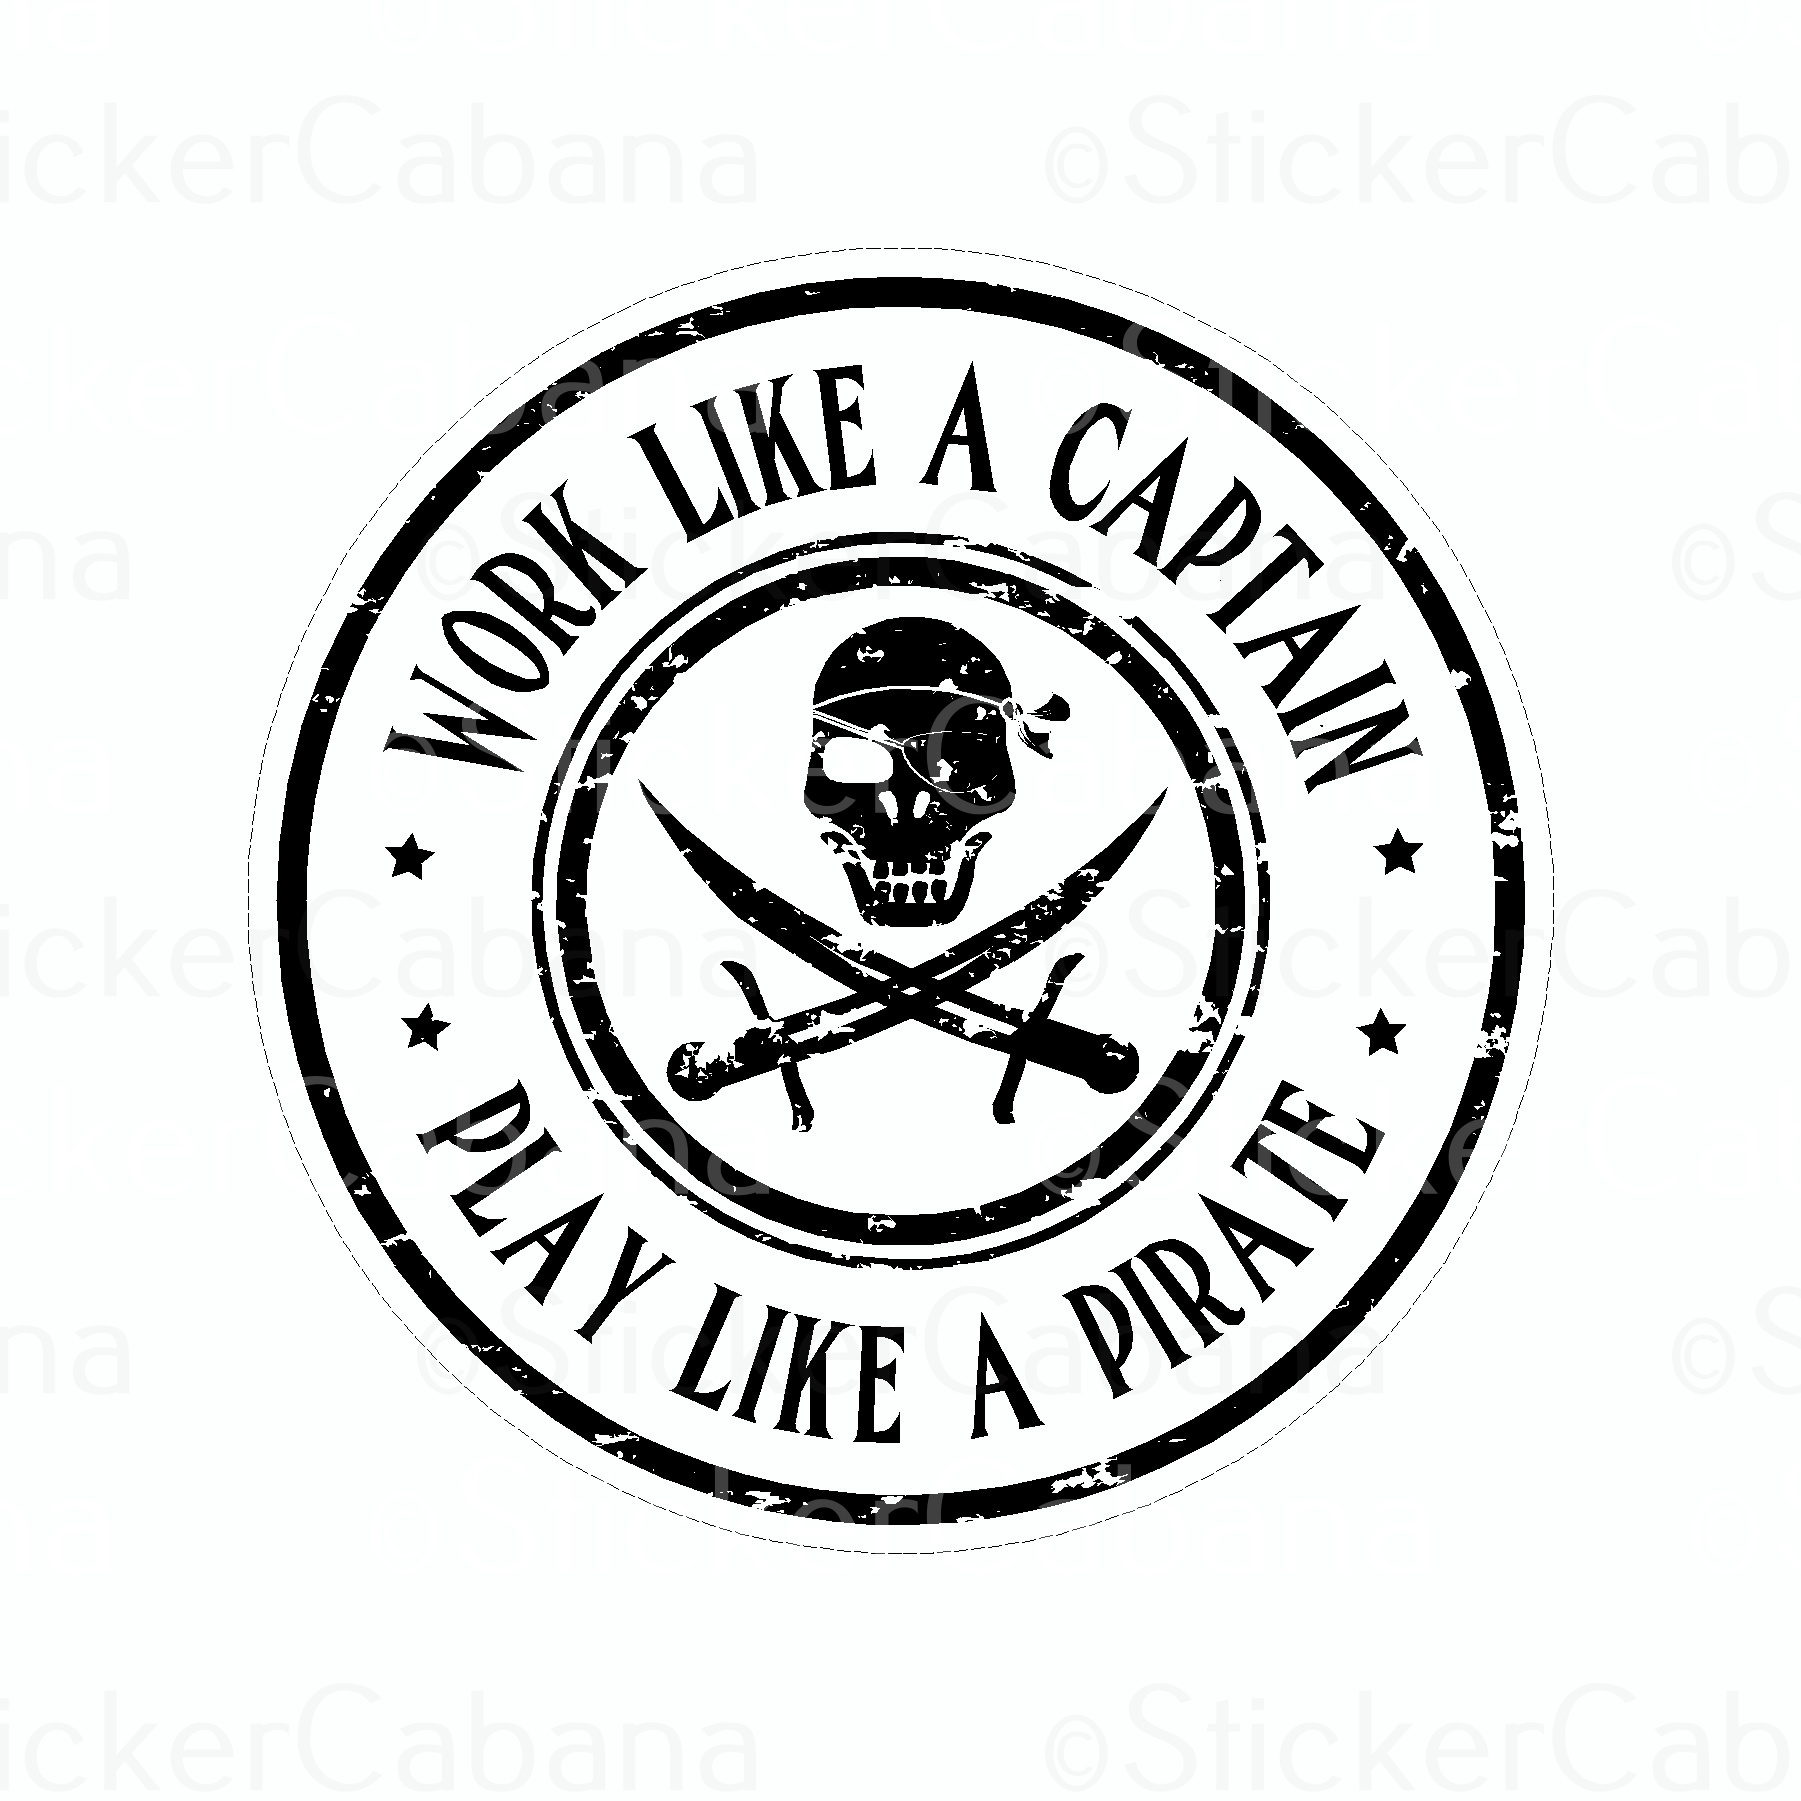 Sticker Cabana Work Like A Captain Play Like a Pirate Large